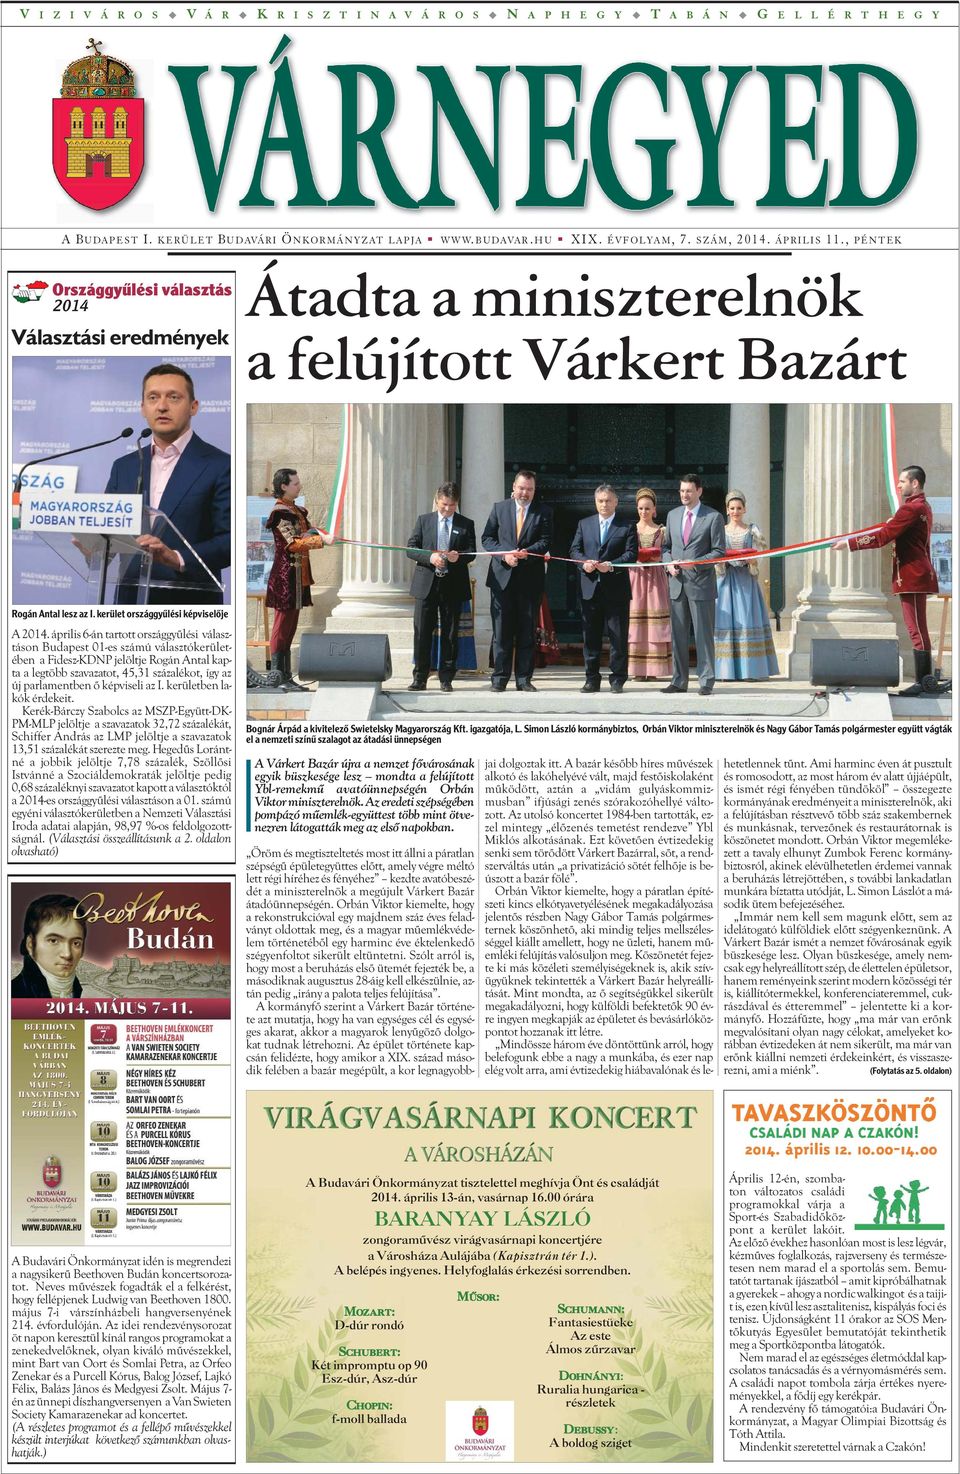 április 6-án tartott országgyûlési választáson Budapest 01-es számú választókerületében a Fidesz-KDNP jelöltje Rogán Antal kapta a legtöbb szavazatot, 45,31 százalékot, így az új parlamentben õ